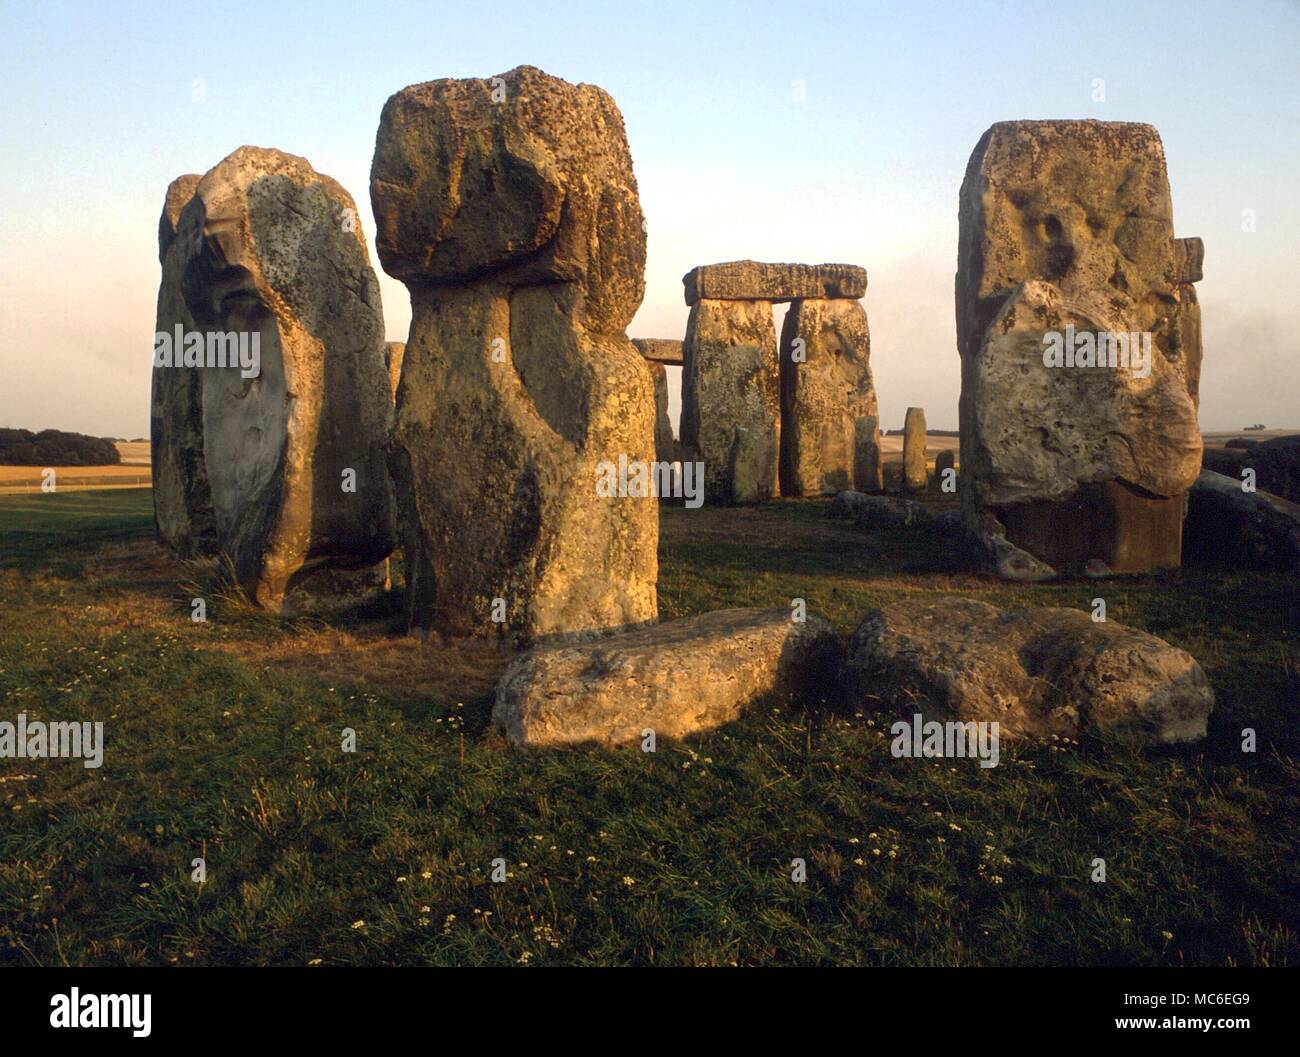 Steine - Stonehenge, die prähistorische religiösen Komplex, 2.200 v. Chr. begann innerhalb einer Erdarbeiten ca. 380 Meter im Durchmesser. Einige der sarsens wiegen 30 Tonnen - der äußere Bereich mit Stürze hat einen Durchmesser von ungefähr 100 Fuß Stockfoto